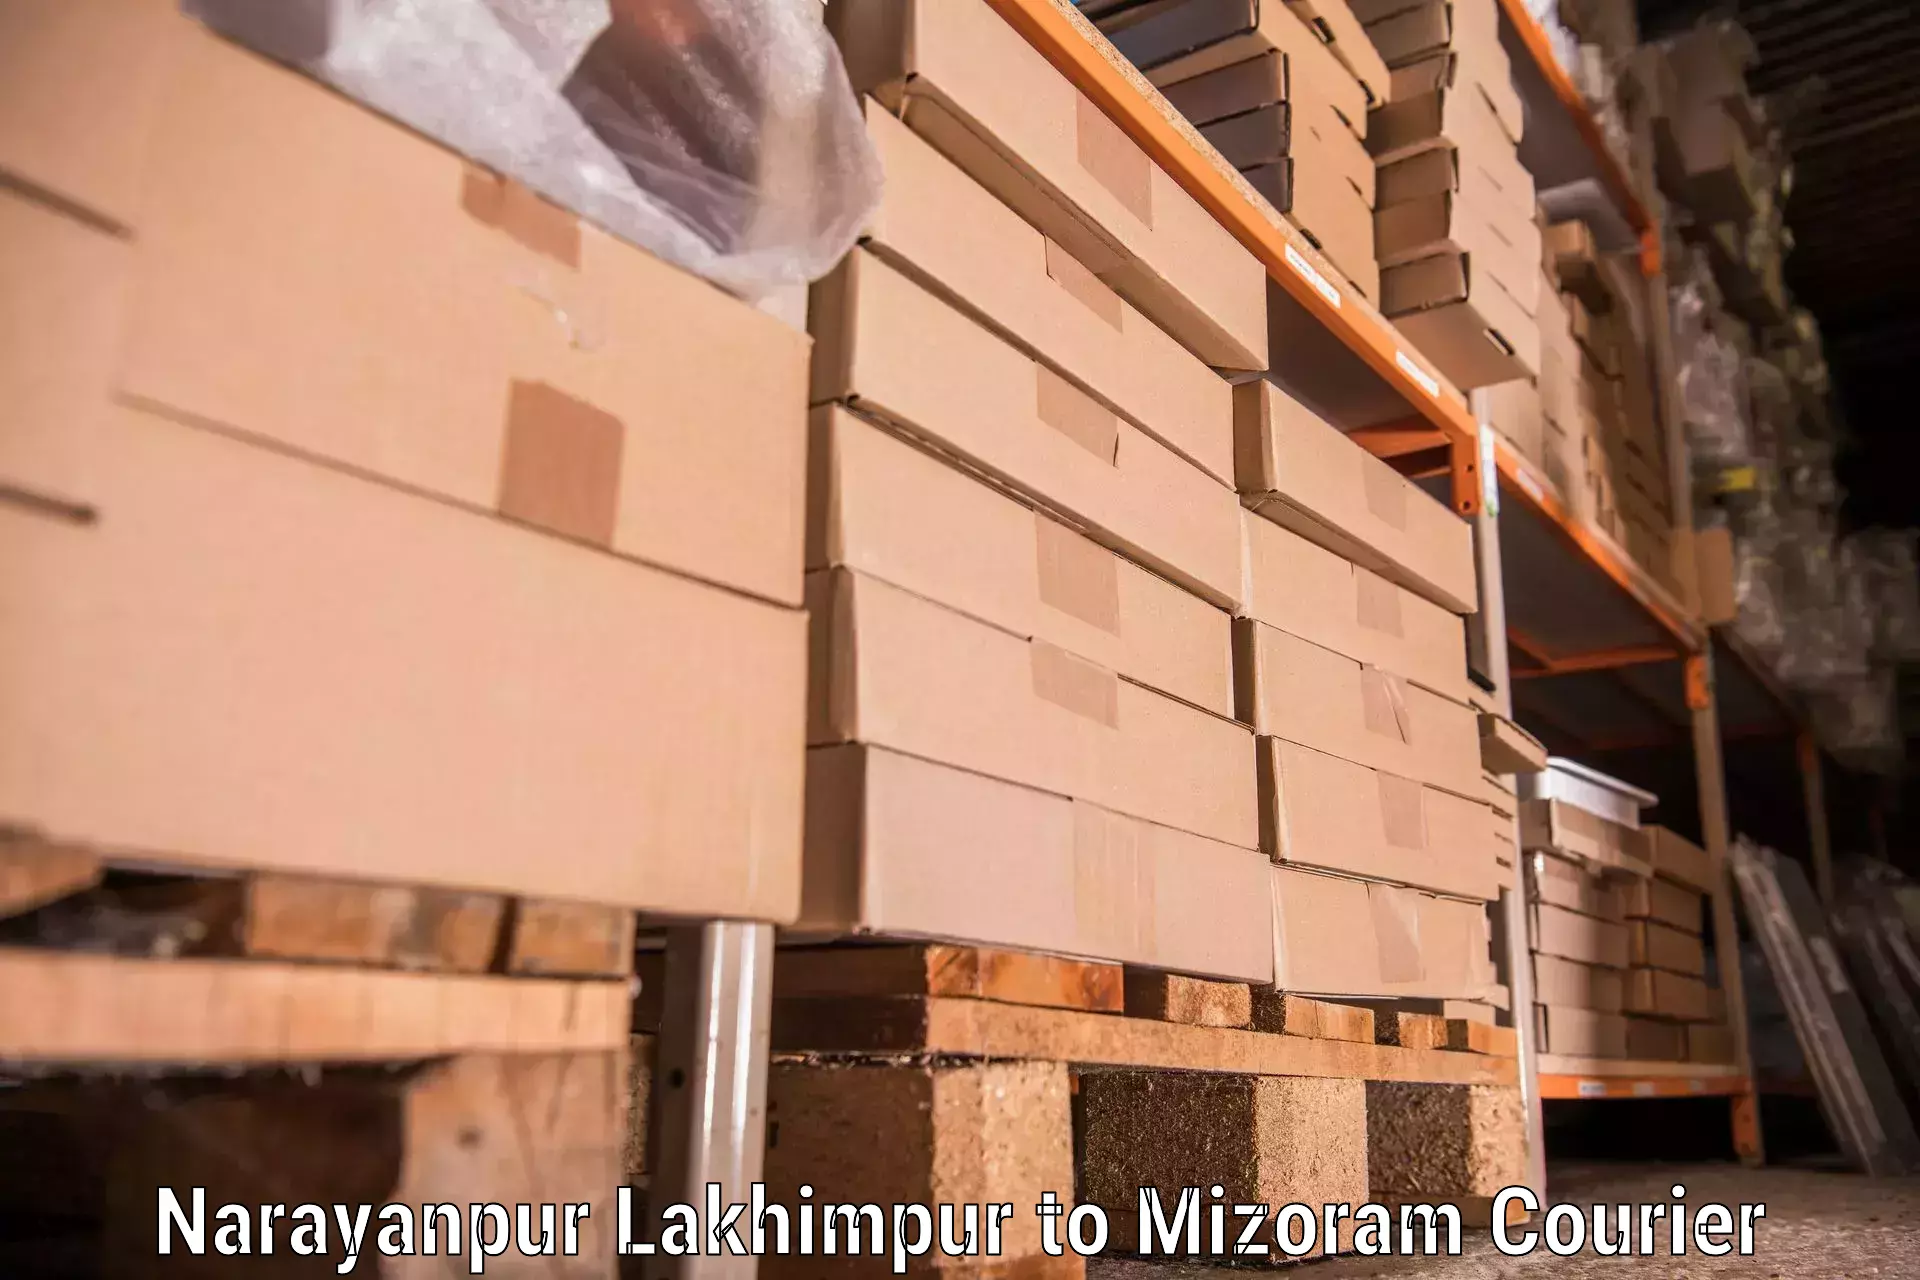 Furniture moving experts Narayanpur Lakhimpur to Mizoram University Aizawl